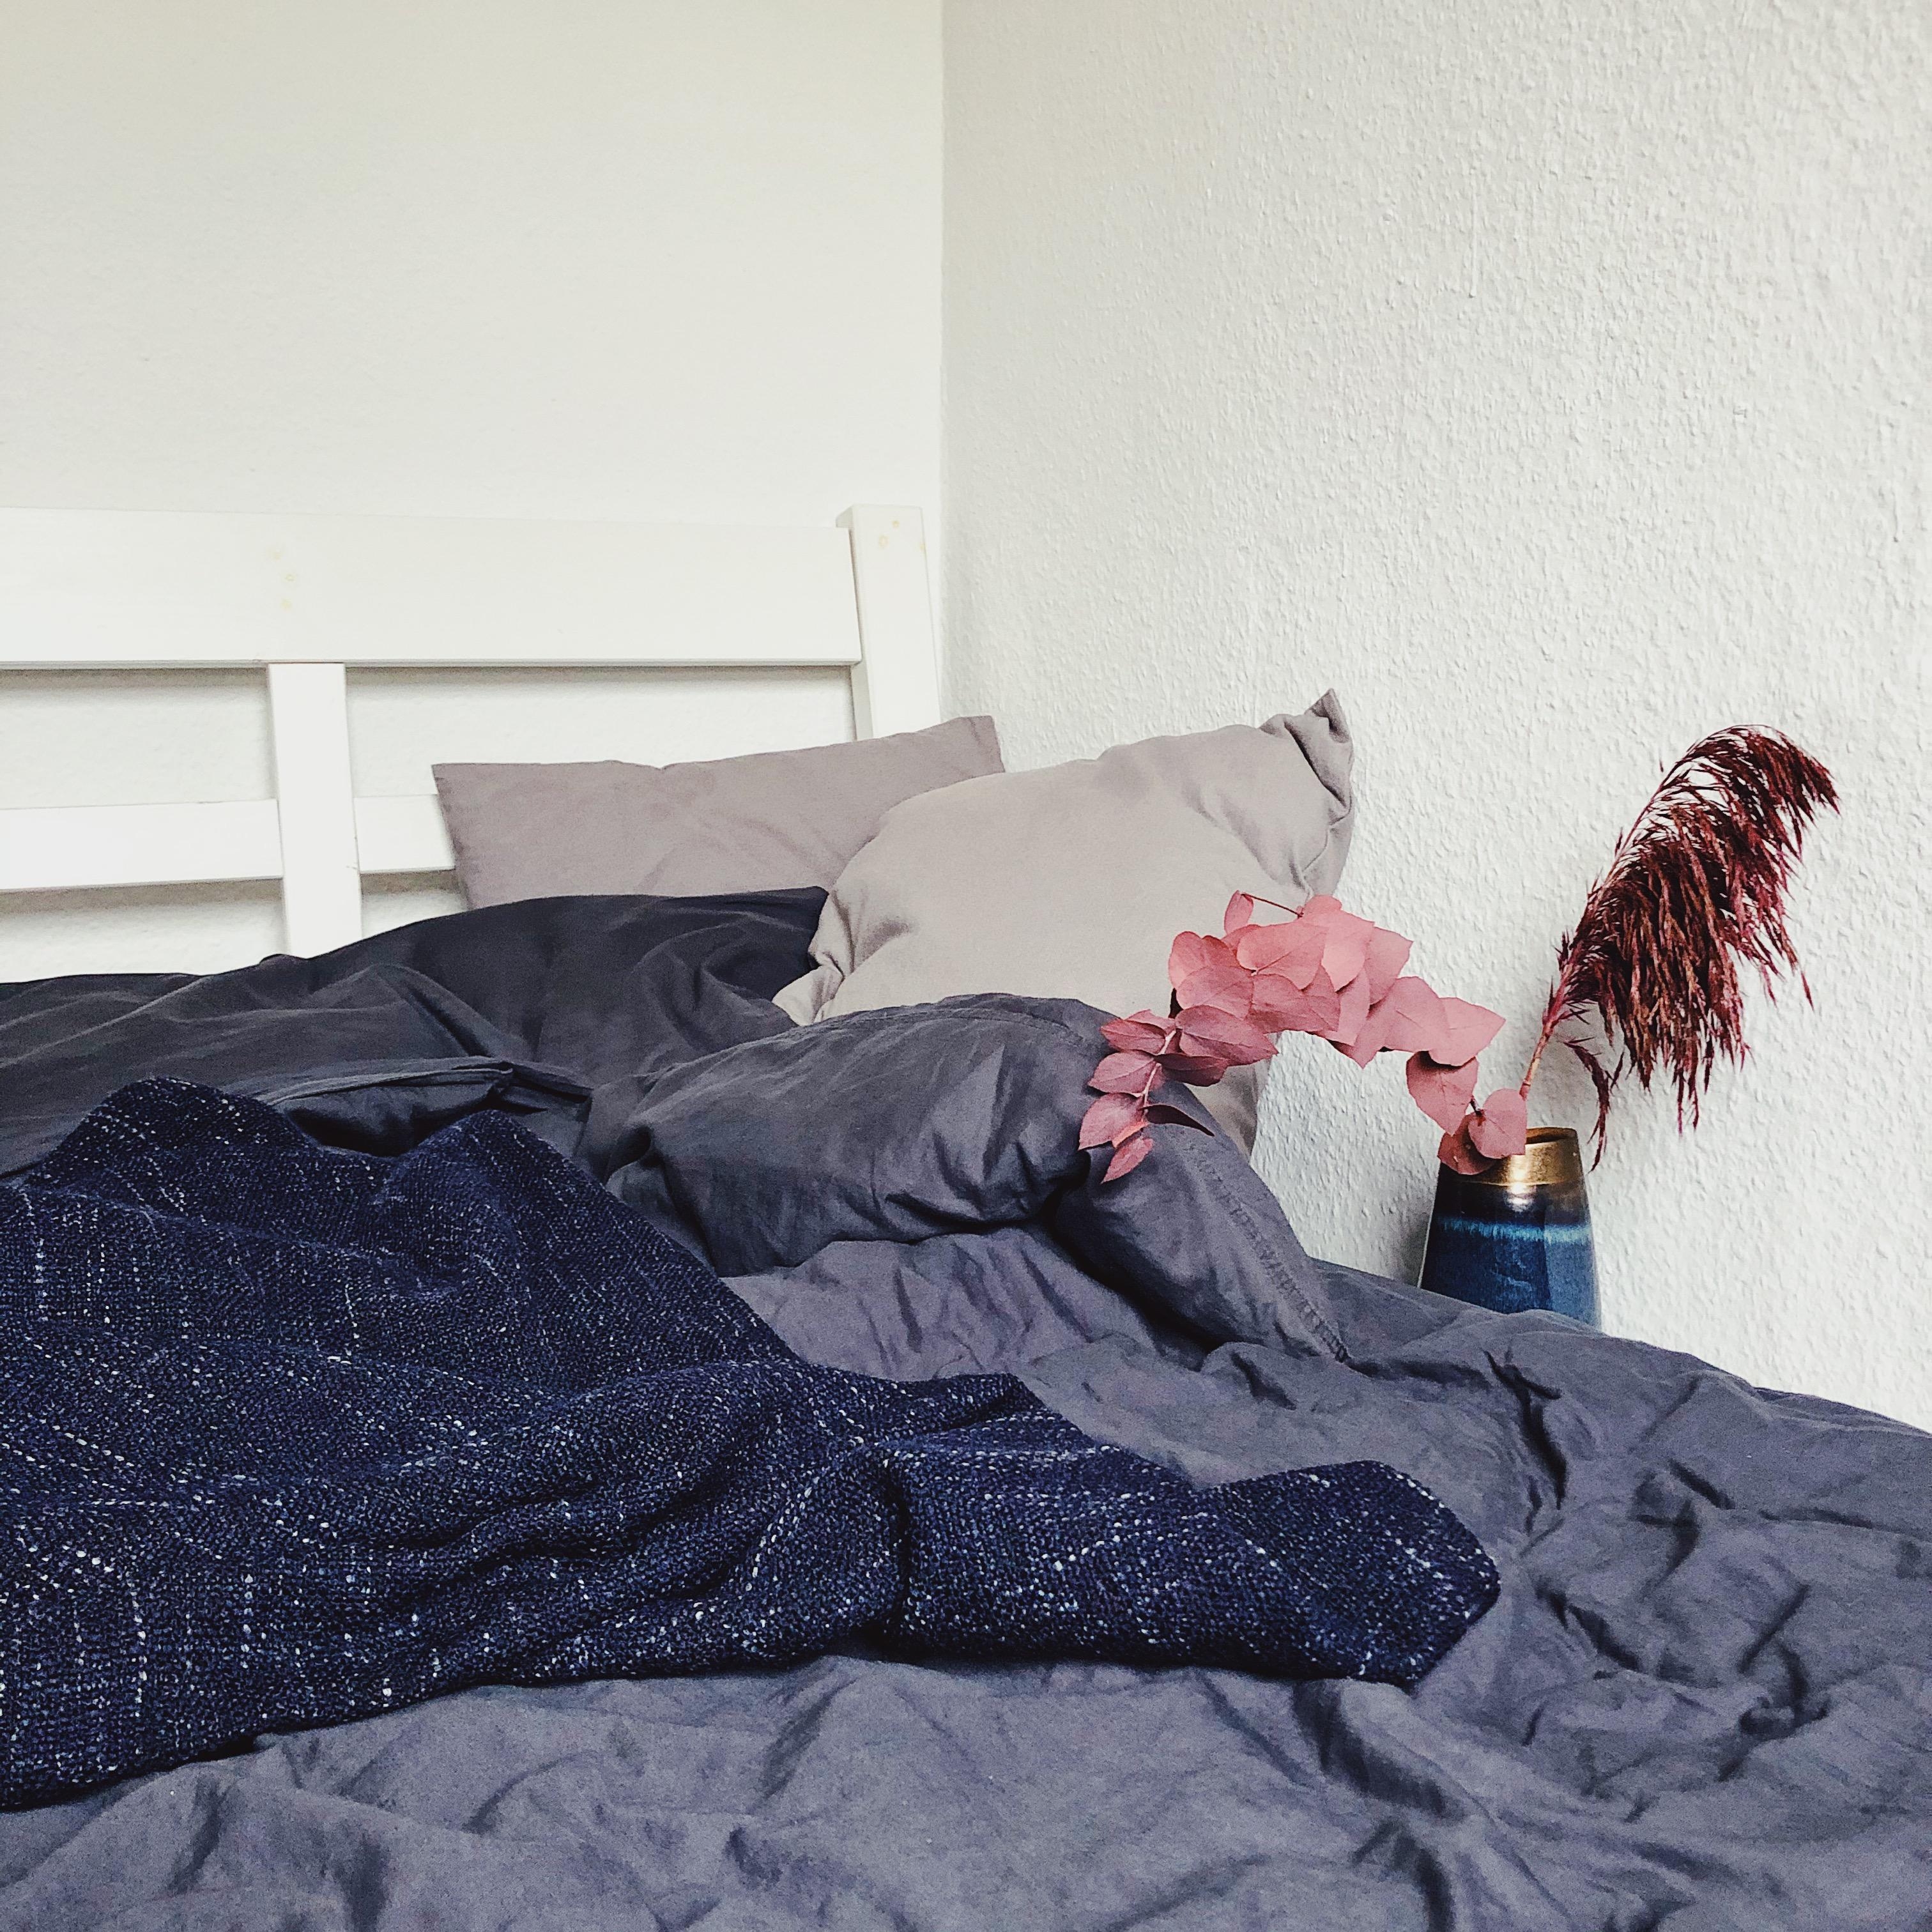 Wenn du Morgens einfach direkt hier liegen bleiben willst...
#Schlafzimmer #Bettwäsche